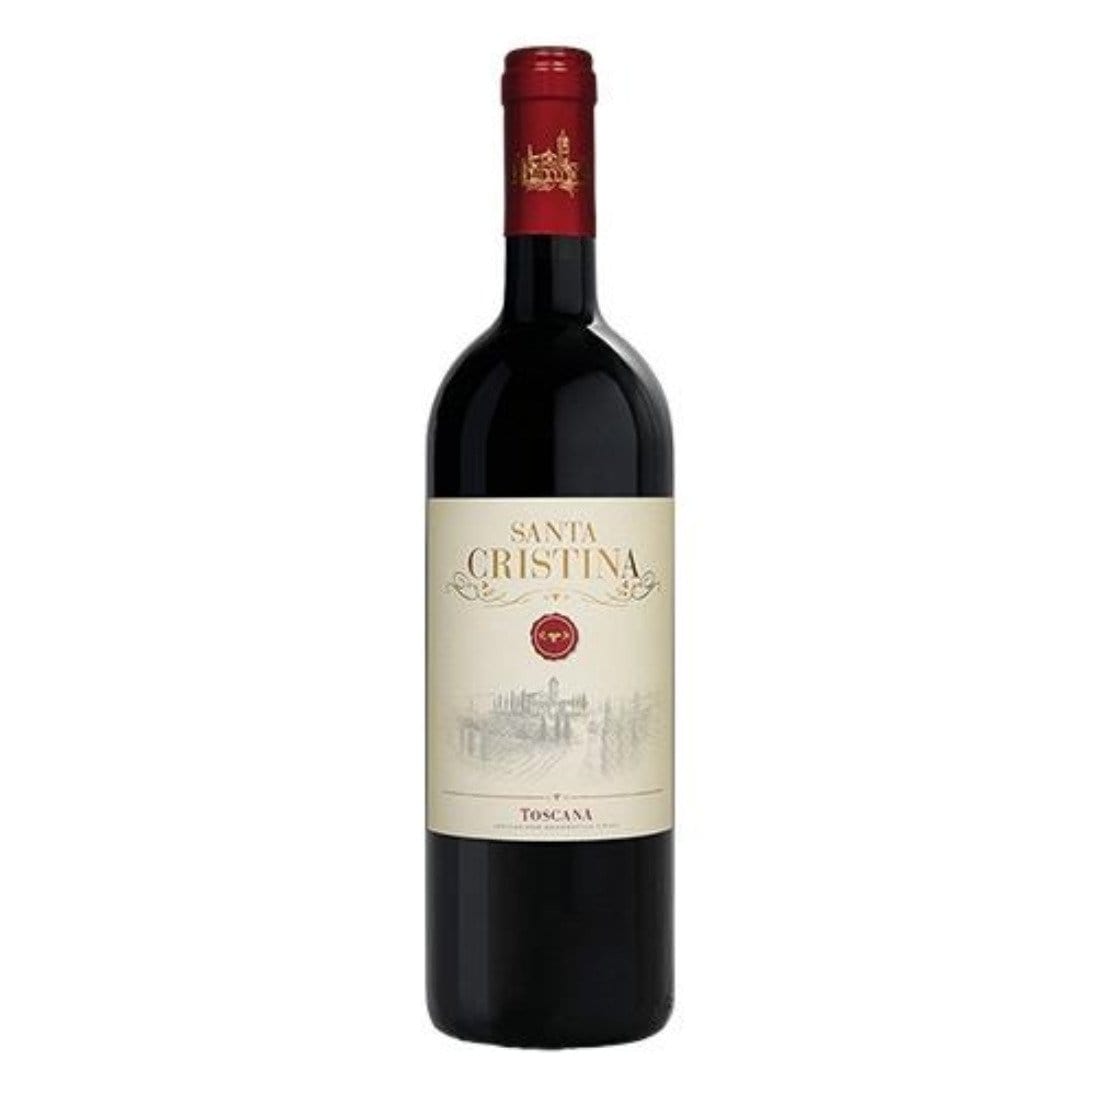 Santa Cristina 2020 Igt Toscana Rosso - Antinori-Vinolog24.com